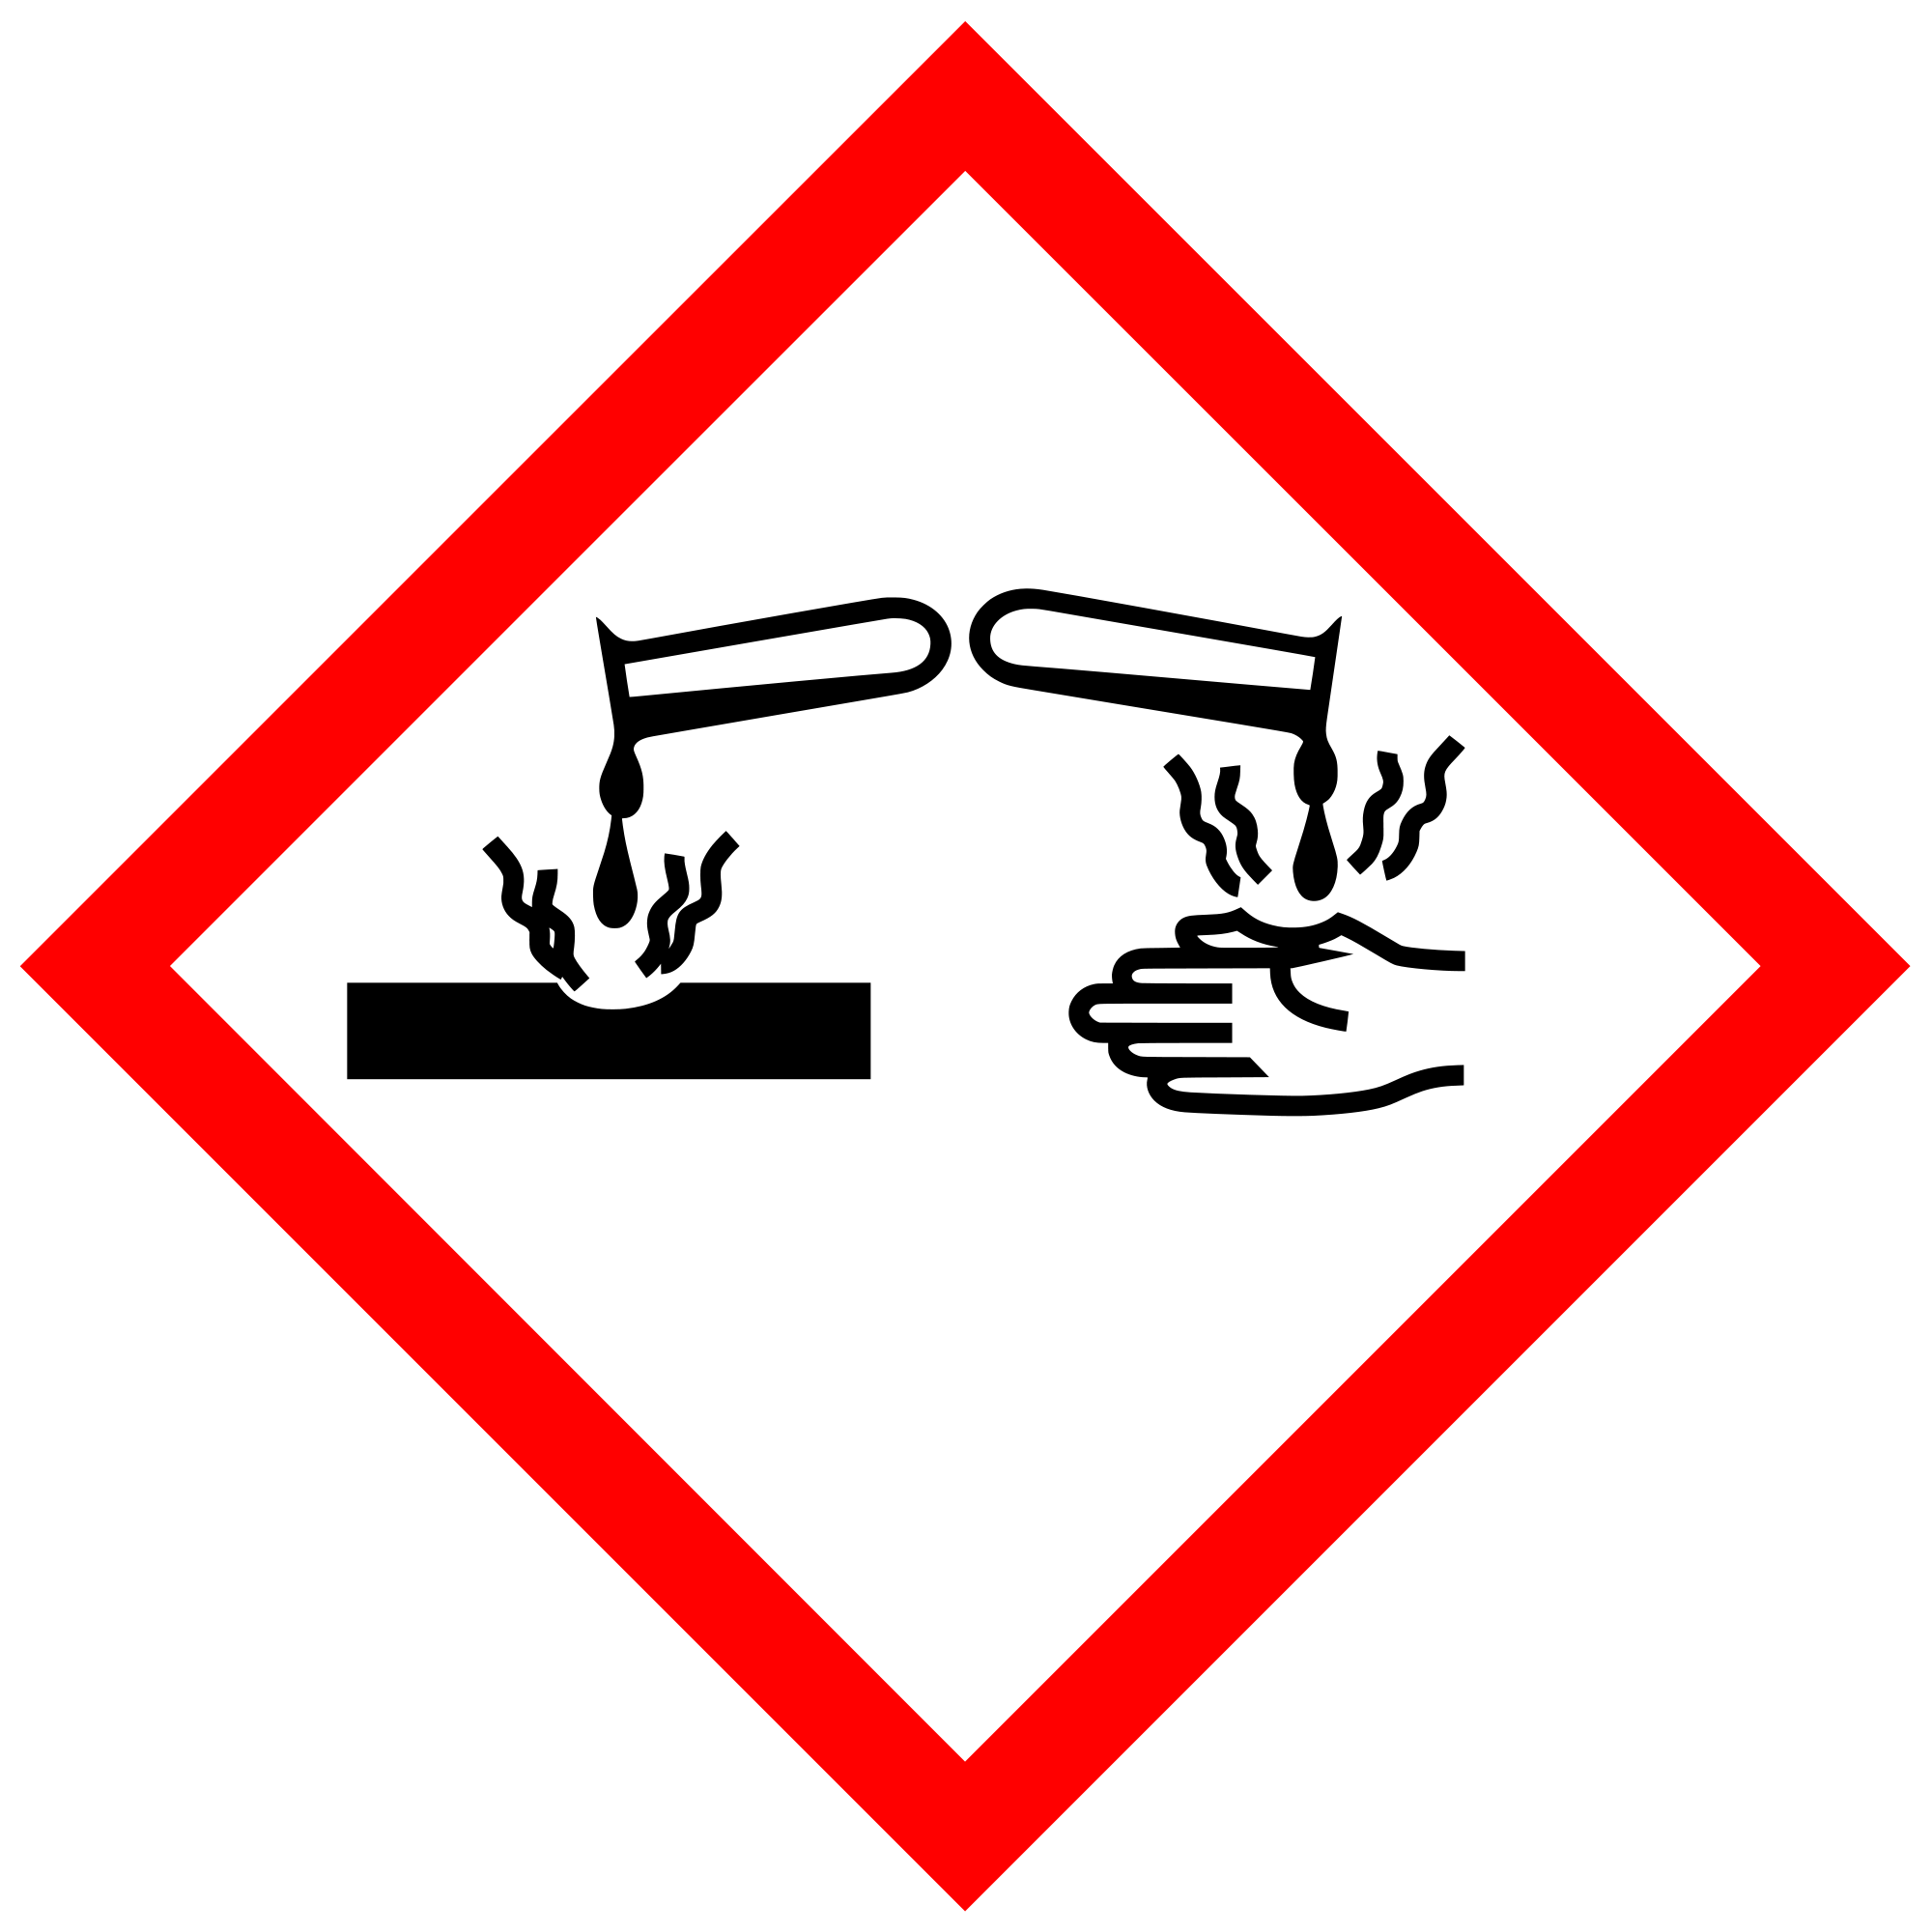 European hazard symbols - Wikipedia, the free encyclopedia